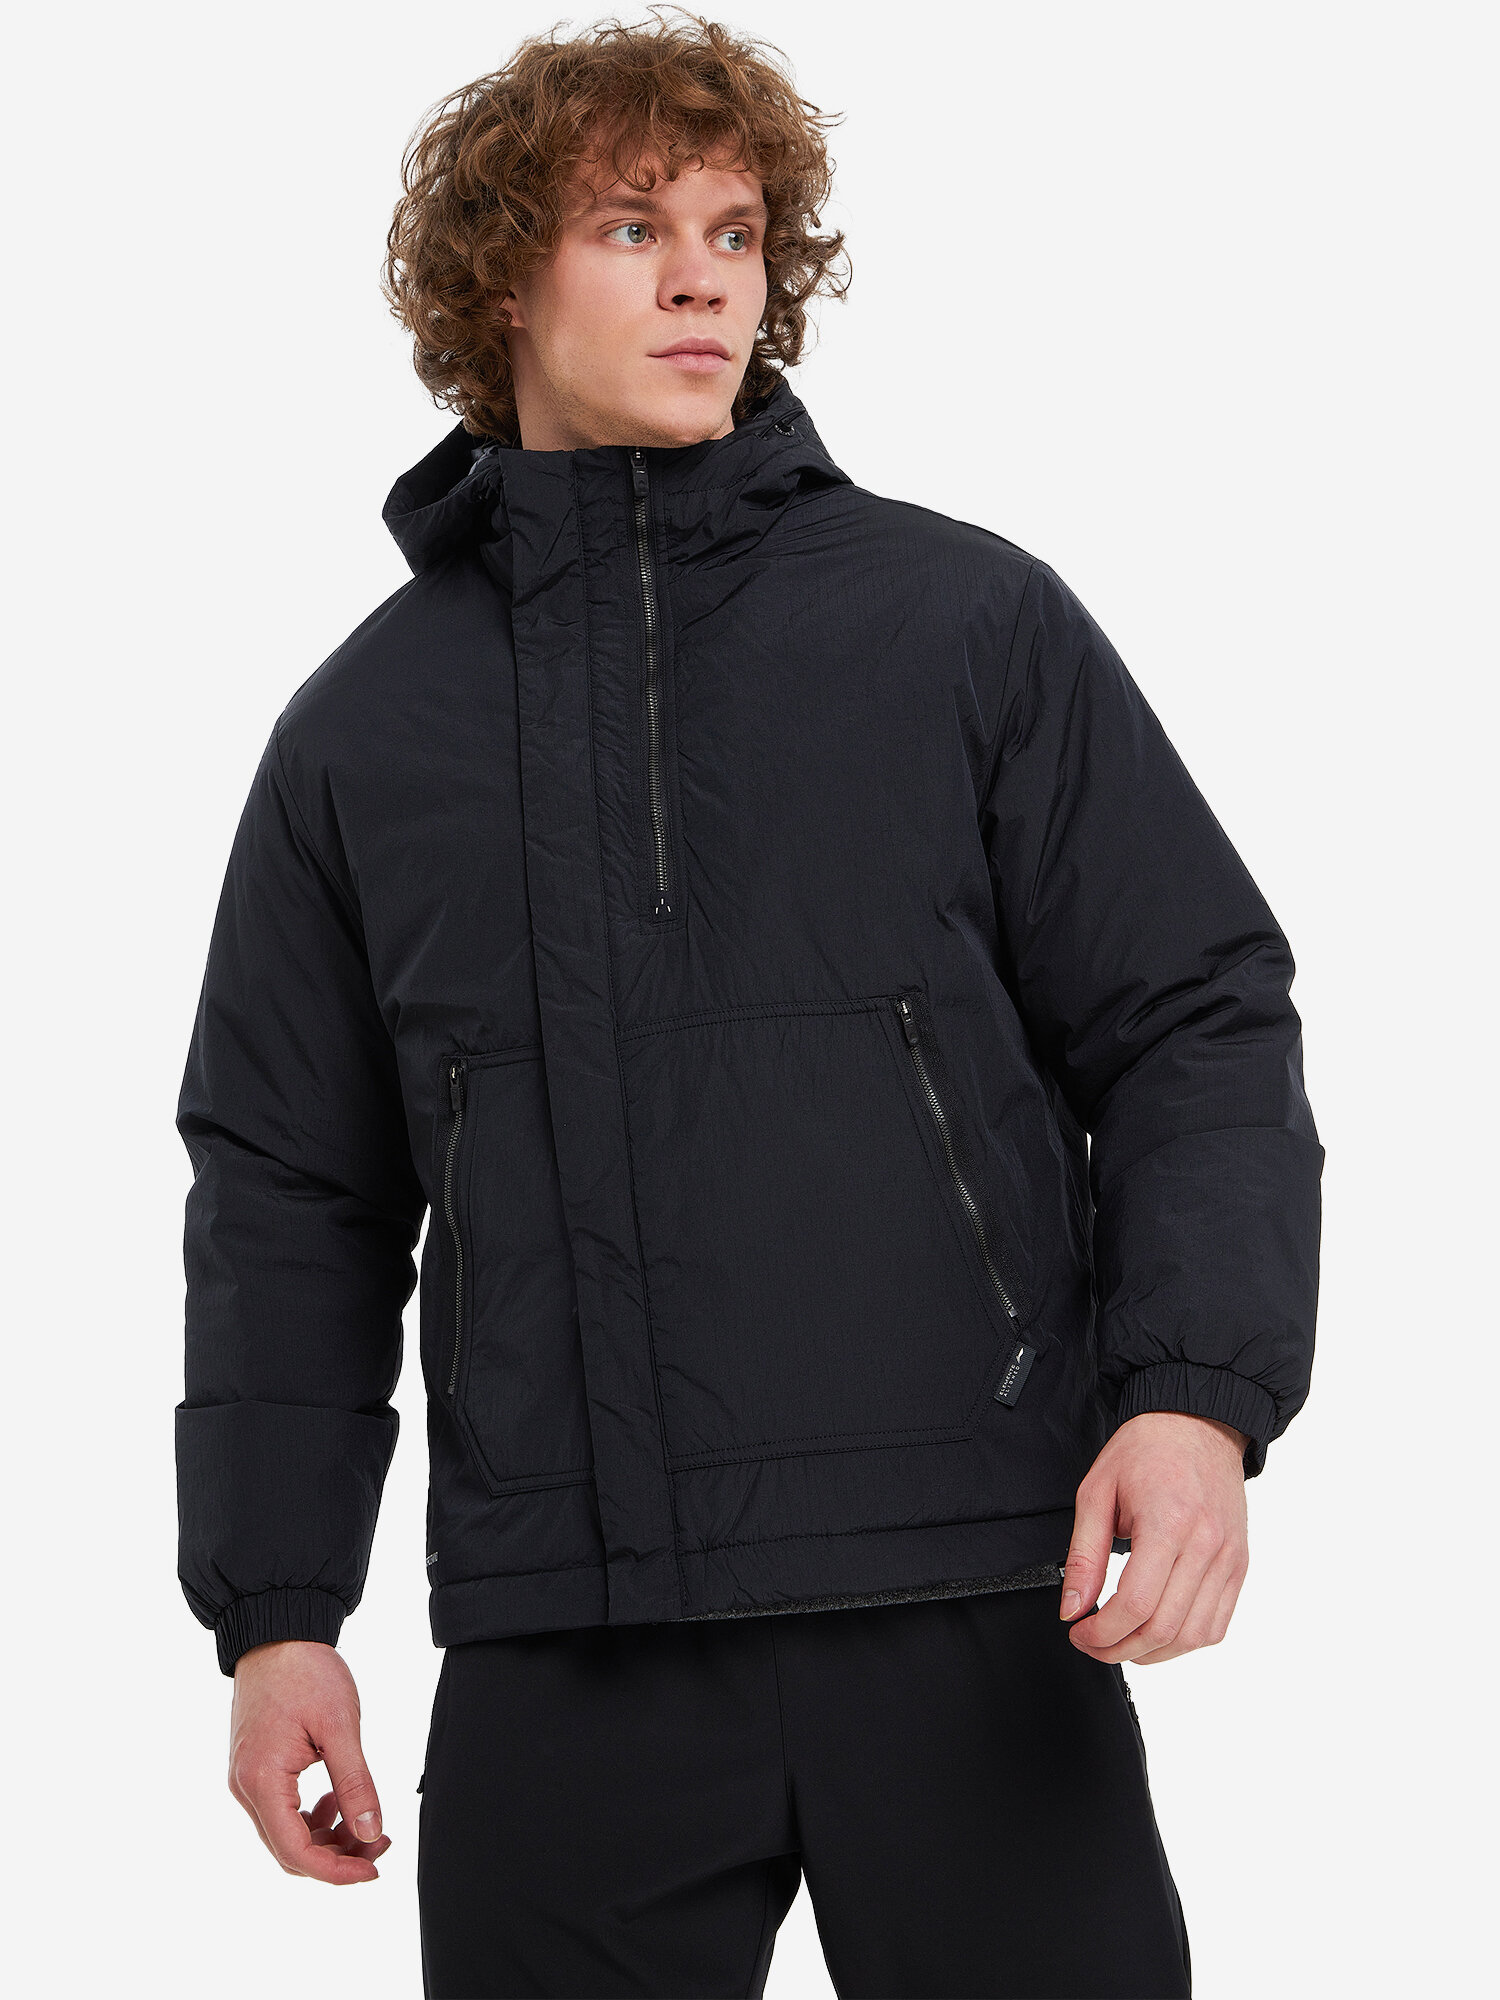 Куртка спортивная LI-NING Padded Jacket